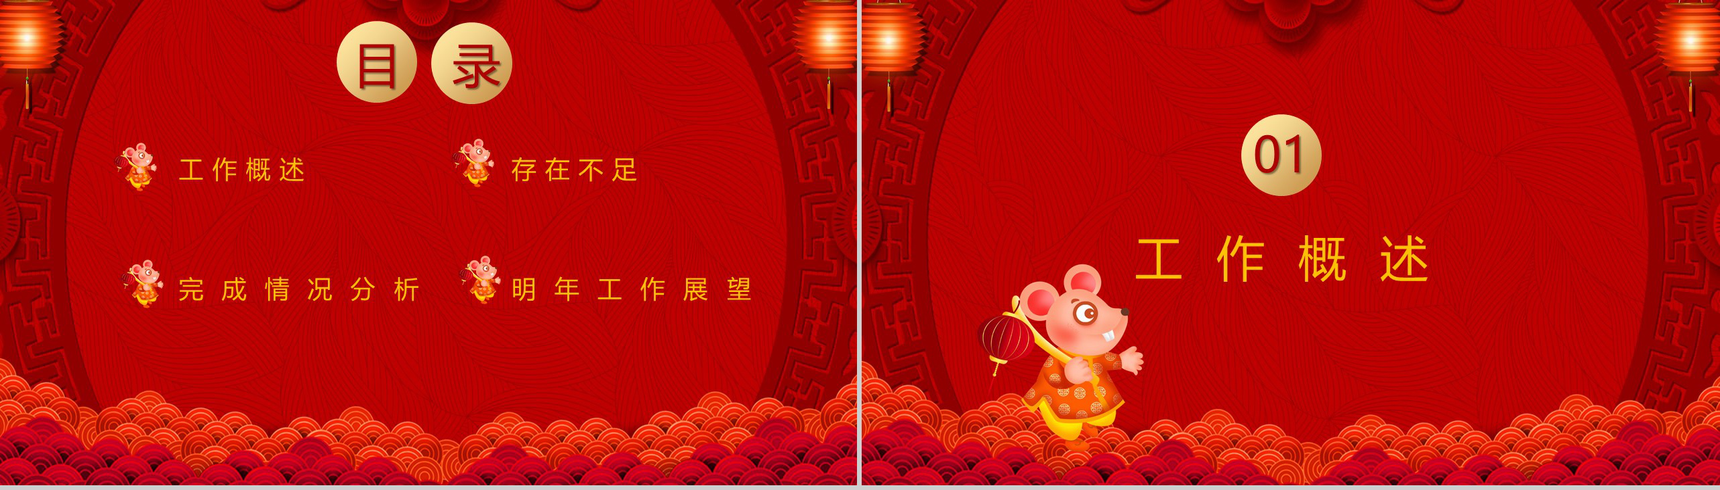 中国风恭贺新春鼠年大吉年终总结汇报PPT模板-2